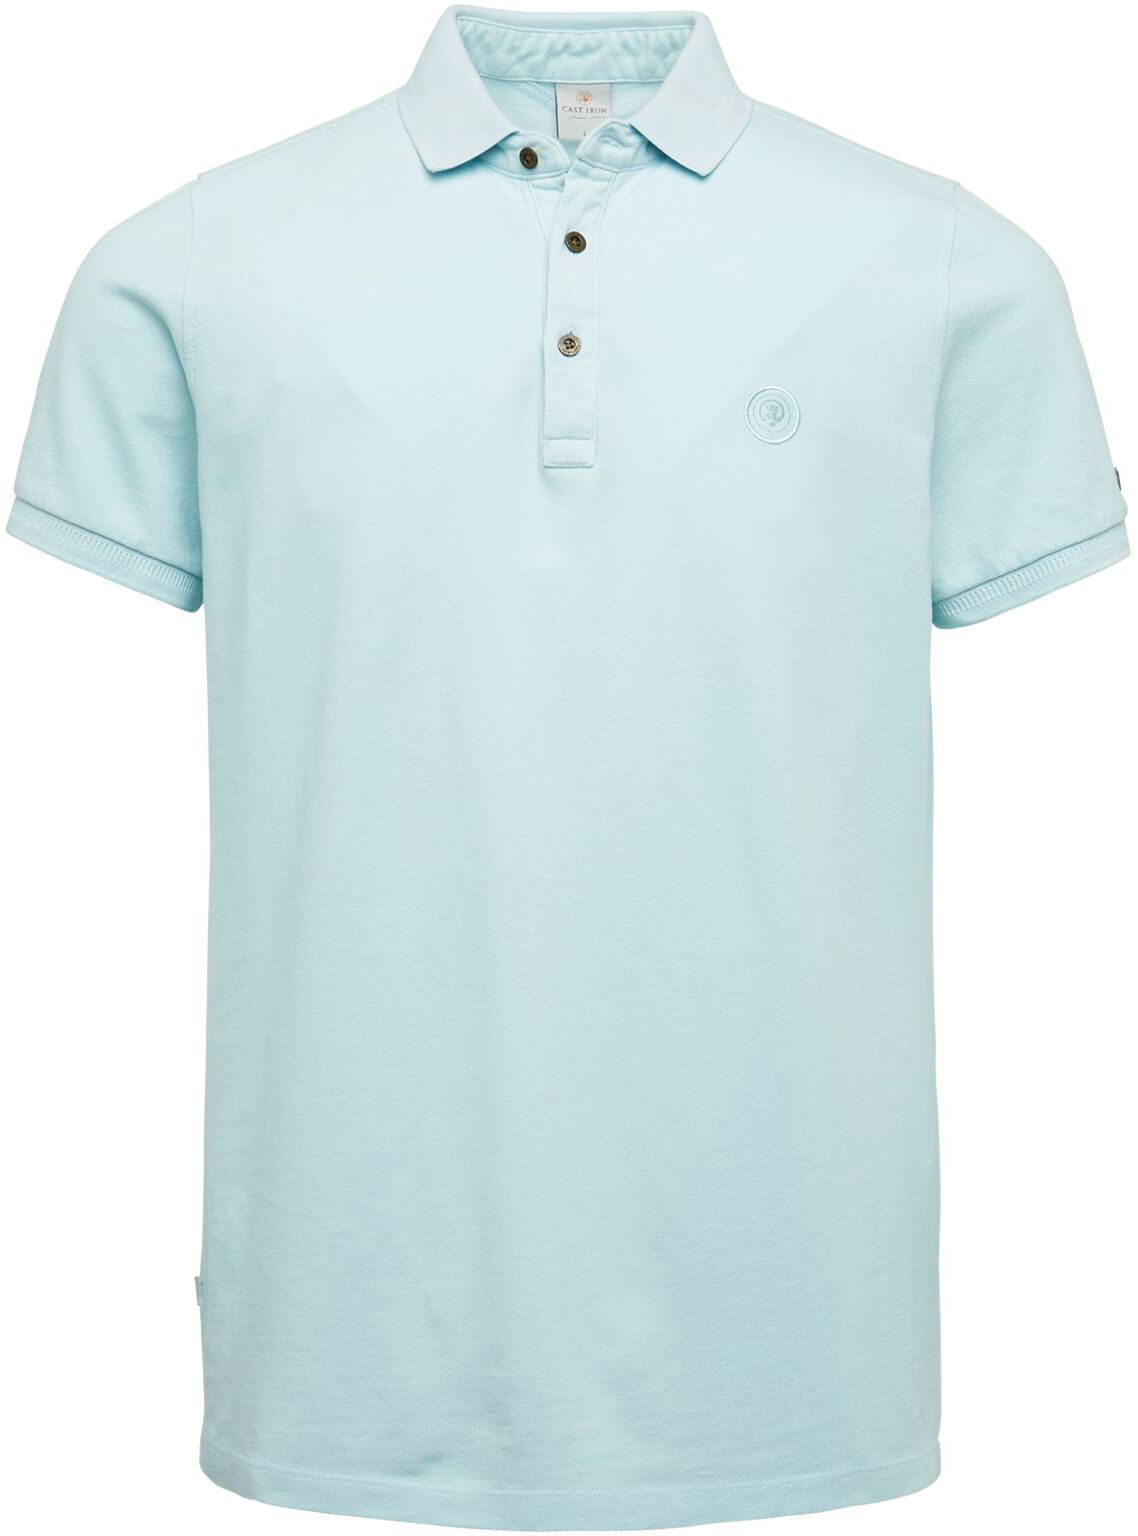 Cast Iron Polo Shirt Garment Dye Blue size L